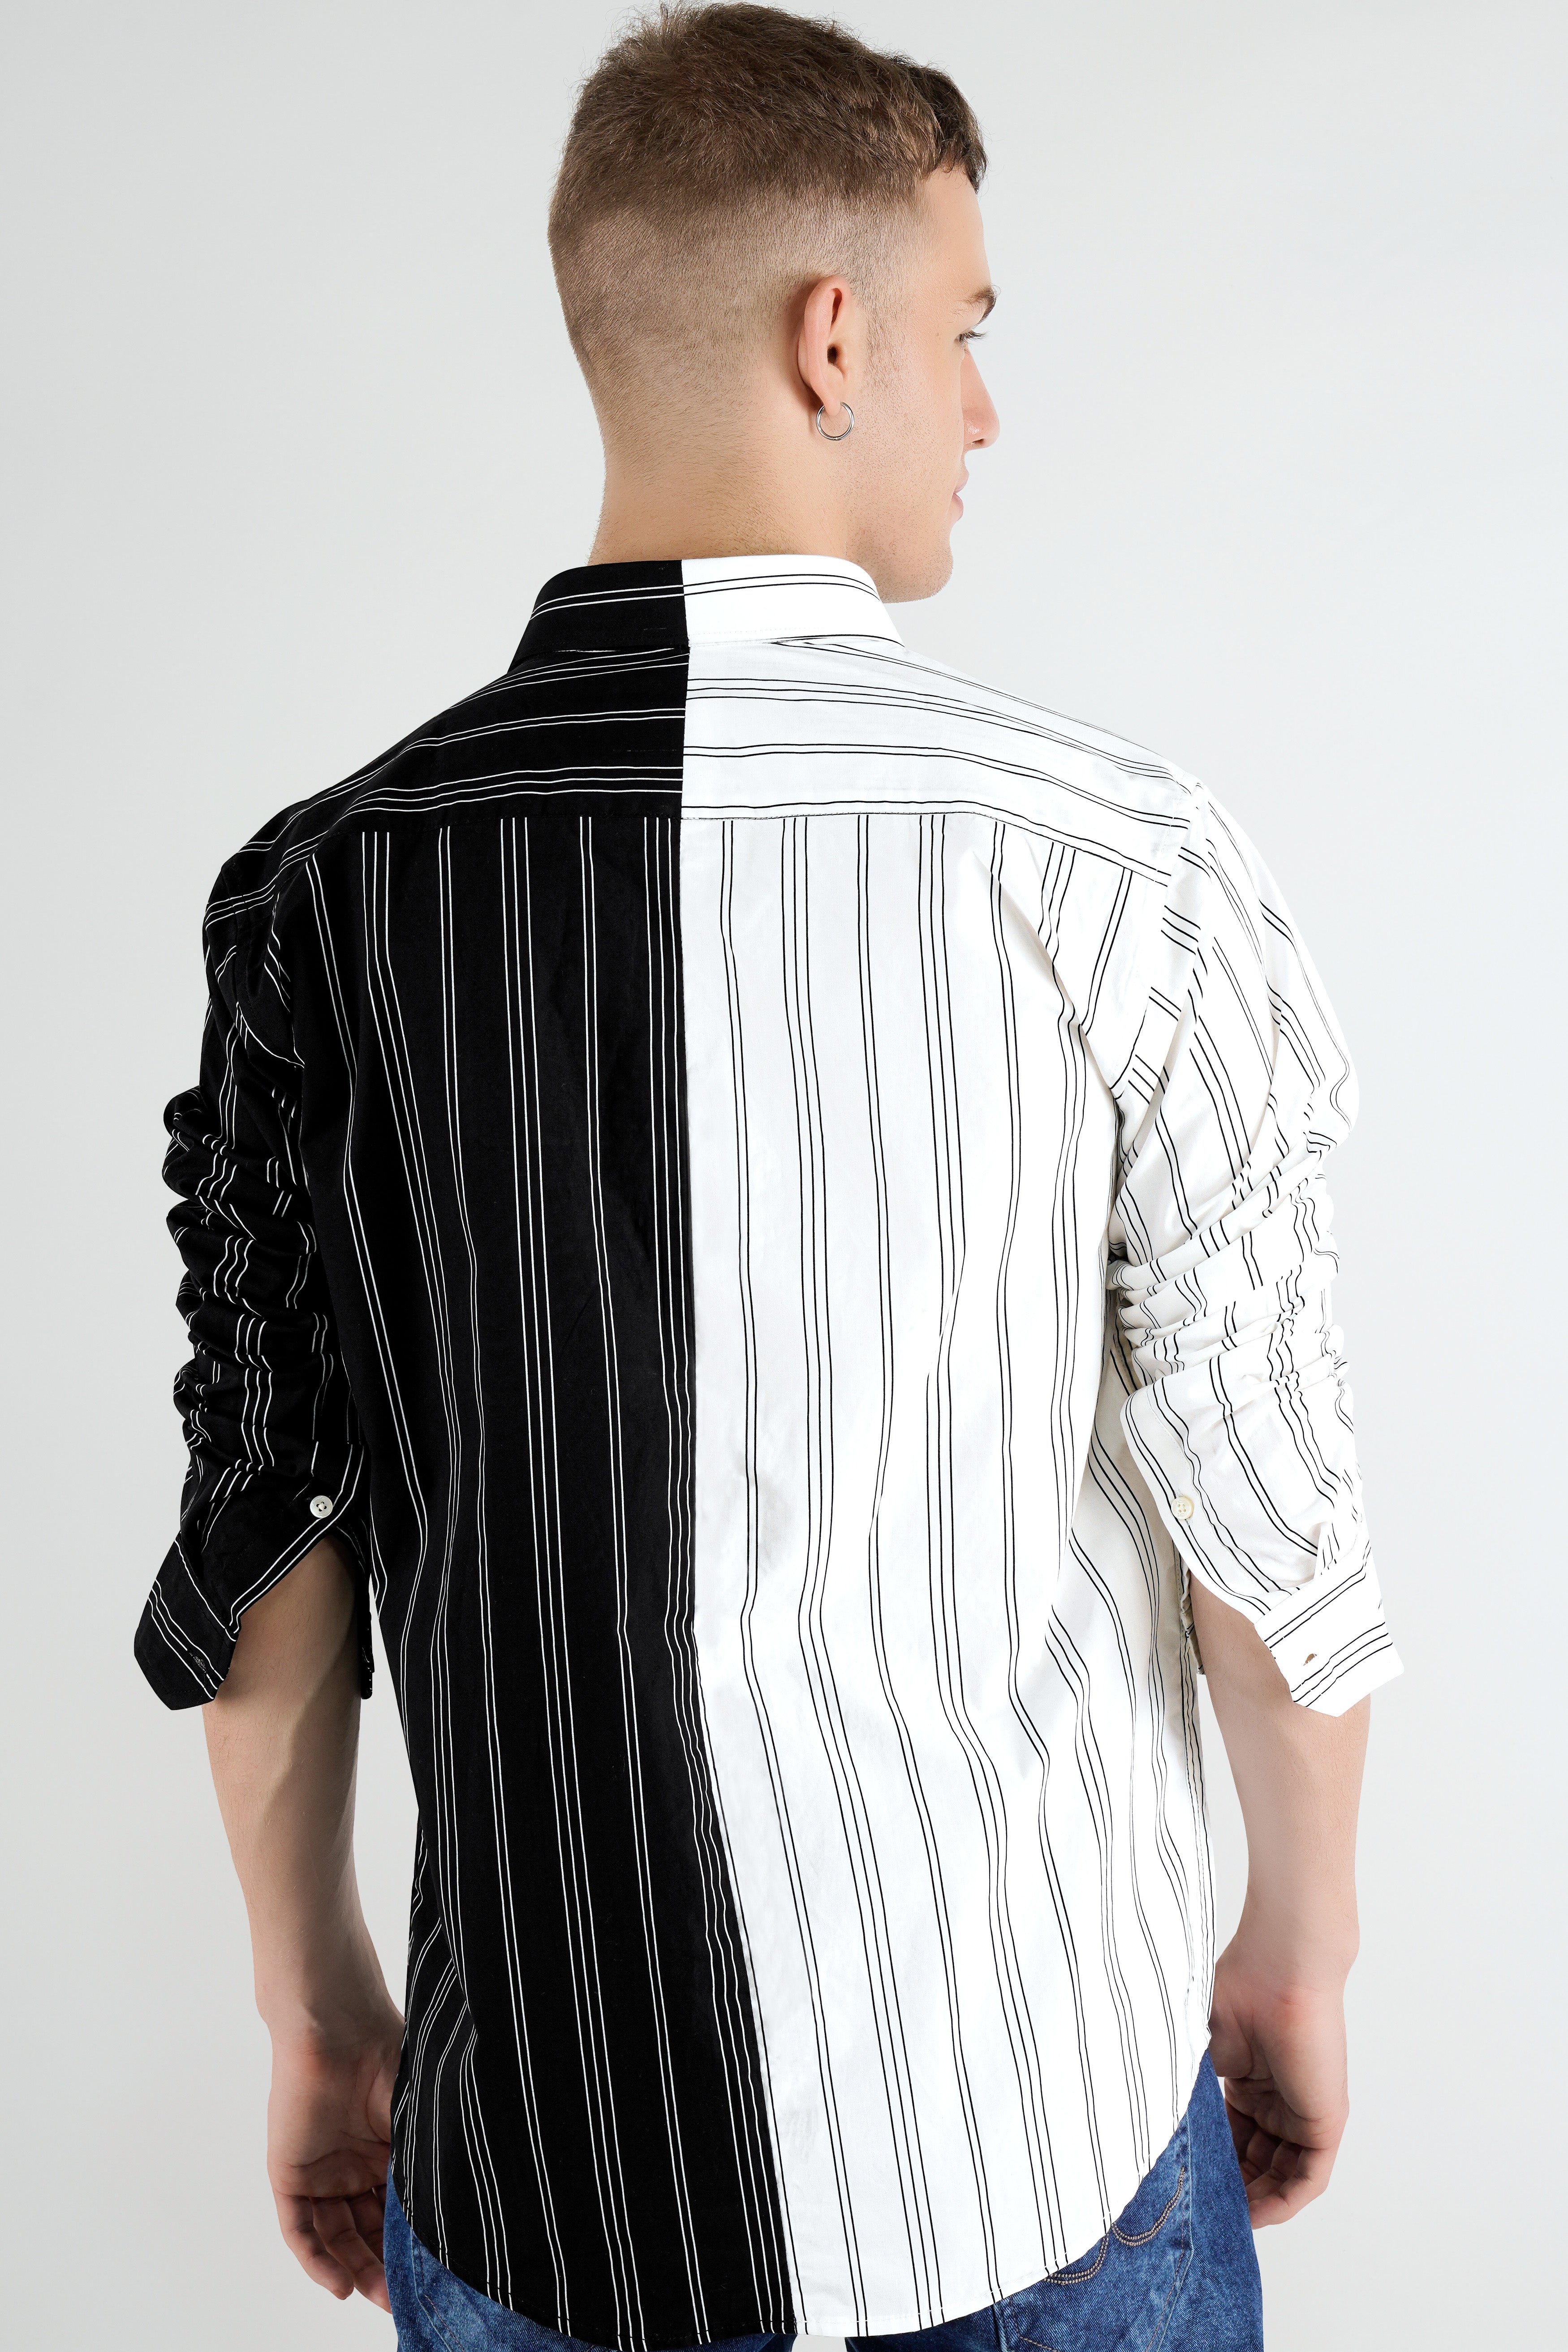 Half White With Half Black Pinstriped  Twill Premium Cotton Designer Shirt